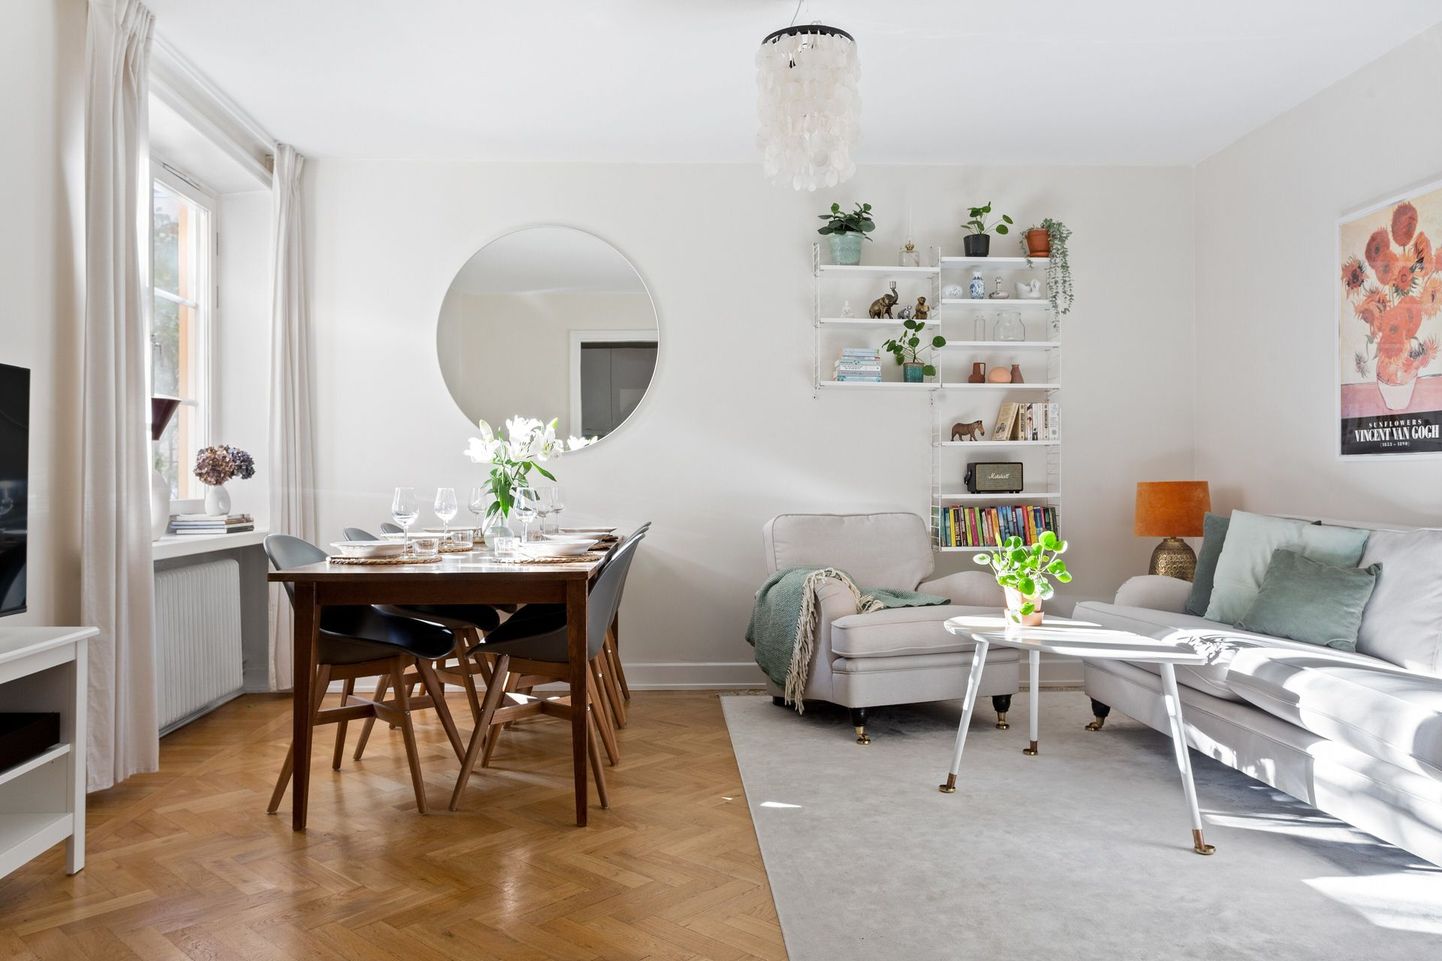 Скромная квартира в Стокгольме, подготовленная к продаже.